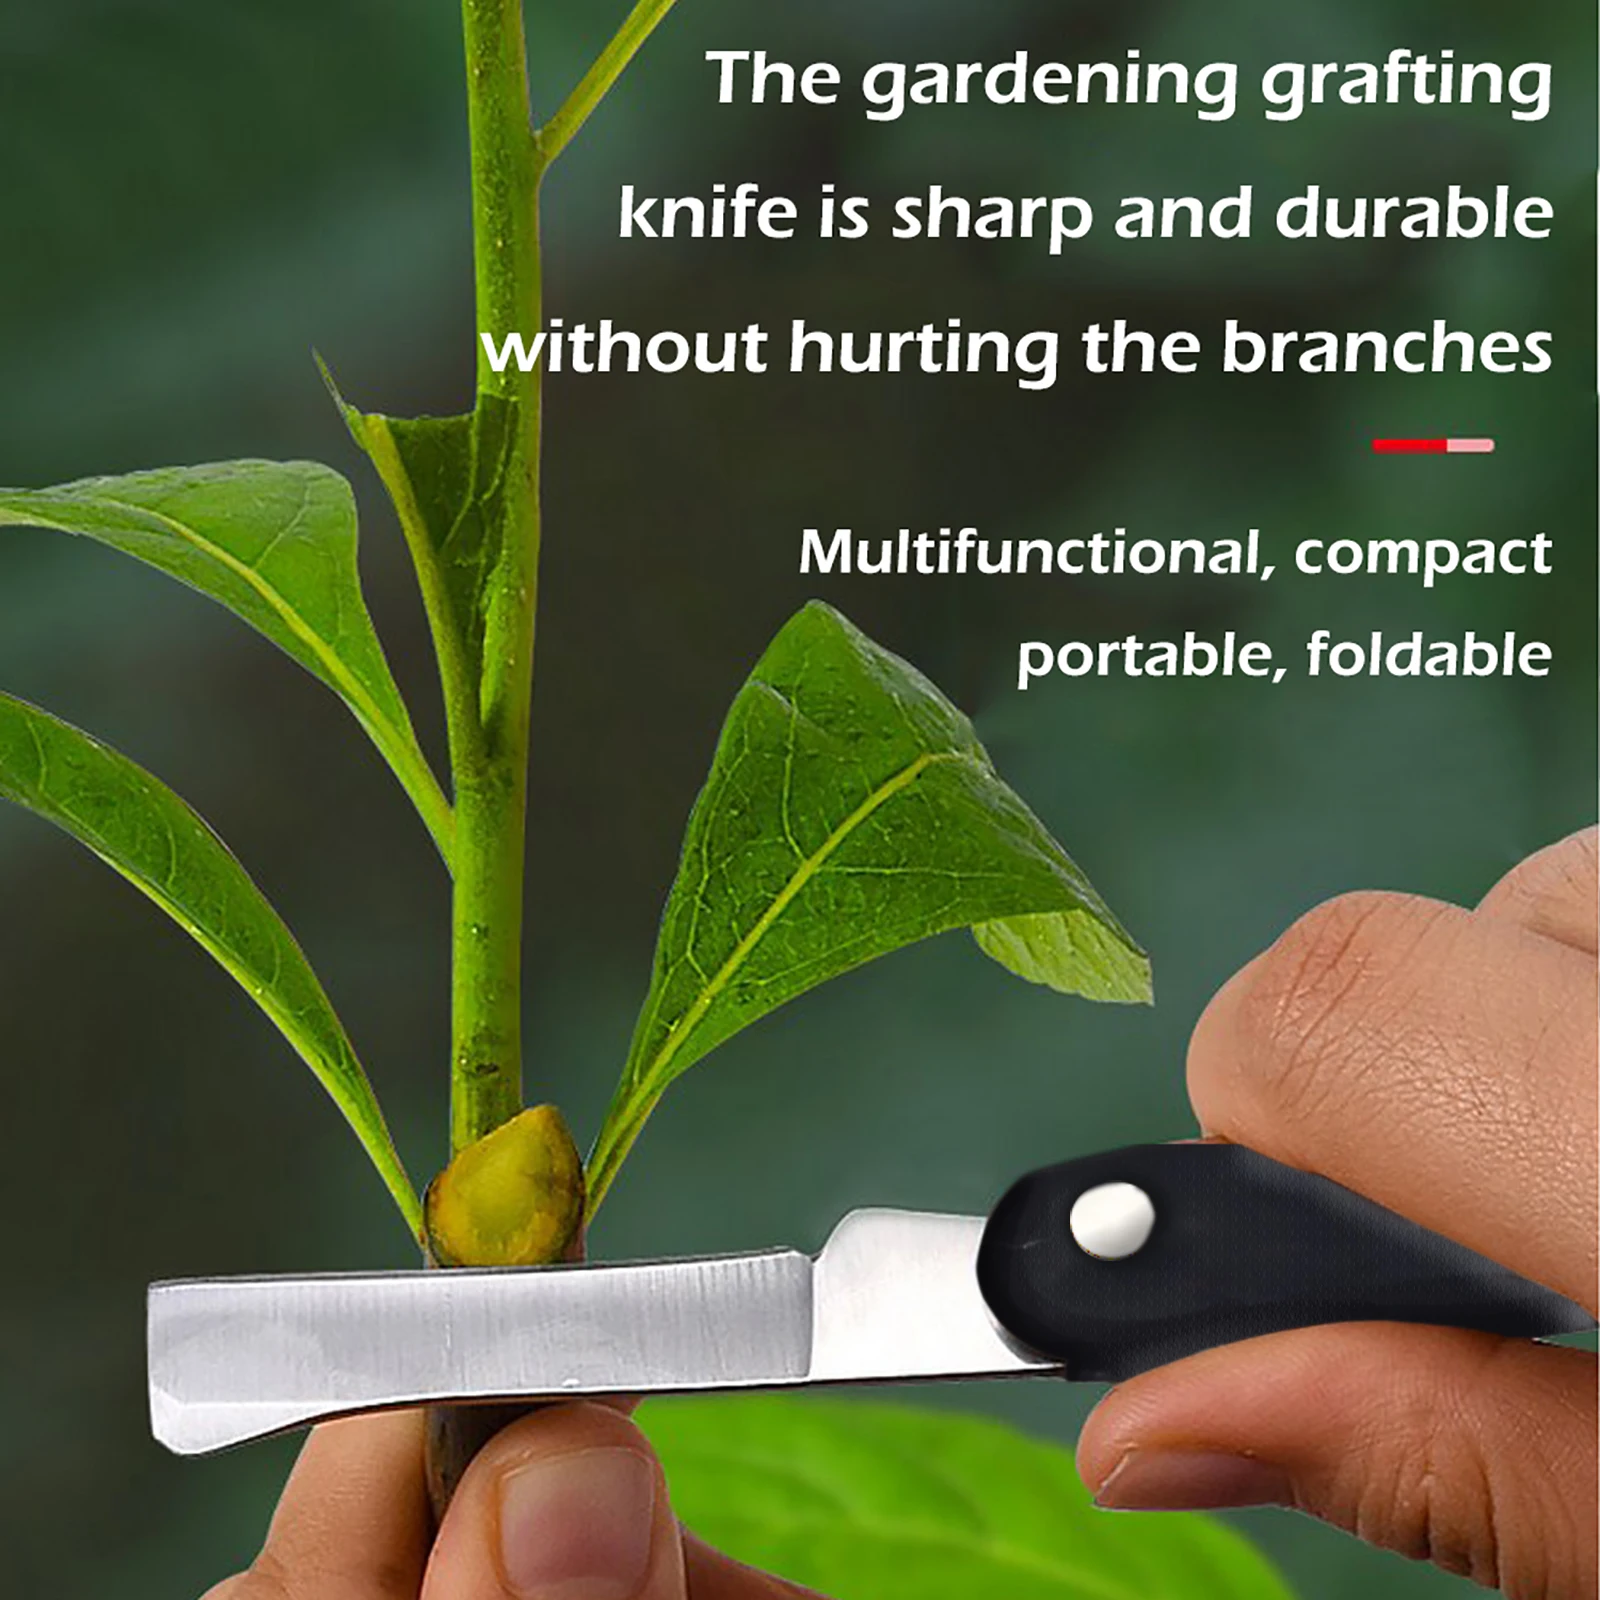 

Garden Foldable Grafting Knife Stainless Steel Pruning Grafting Knife Professional Folding Garden Cutter Scissor Seedling Tools